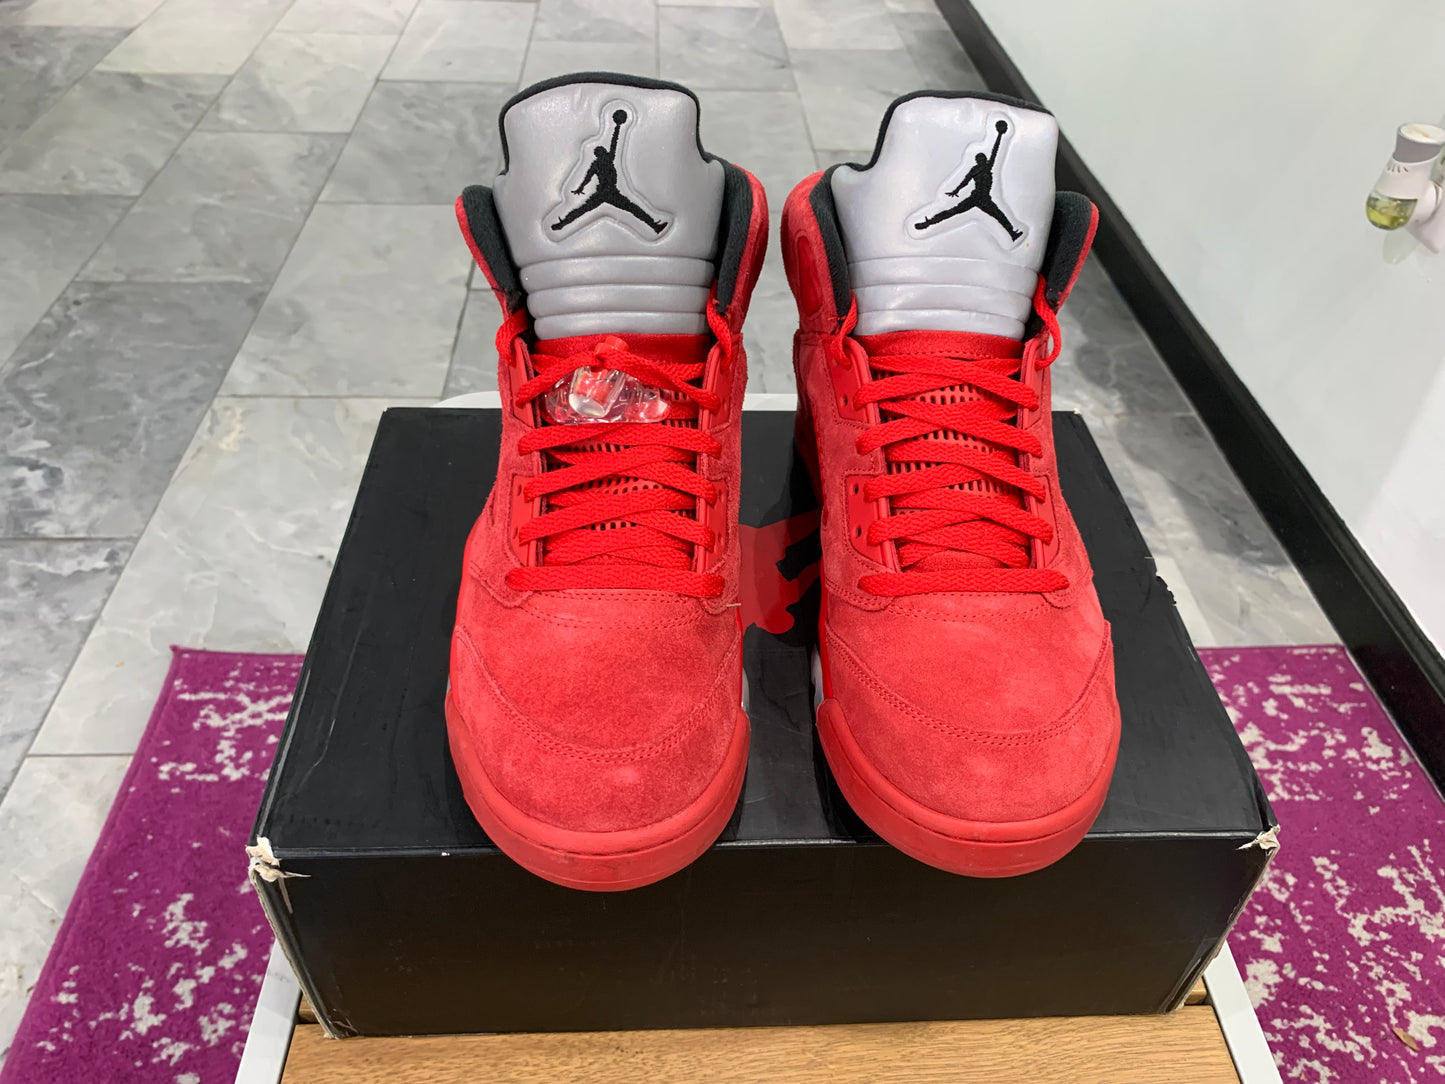 Air Jordan 5 Red Suede (USED)